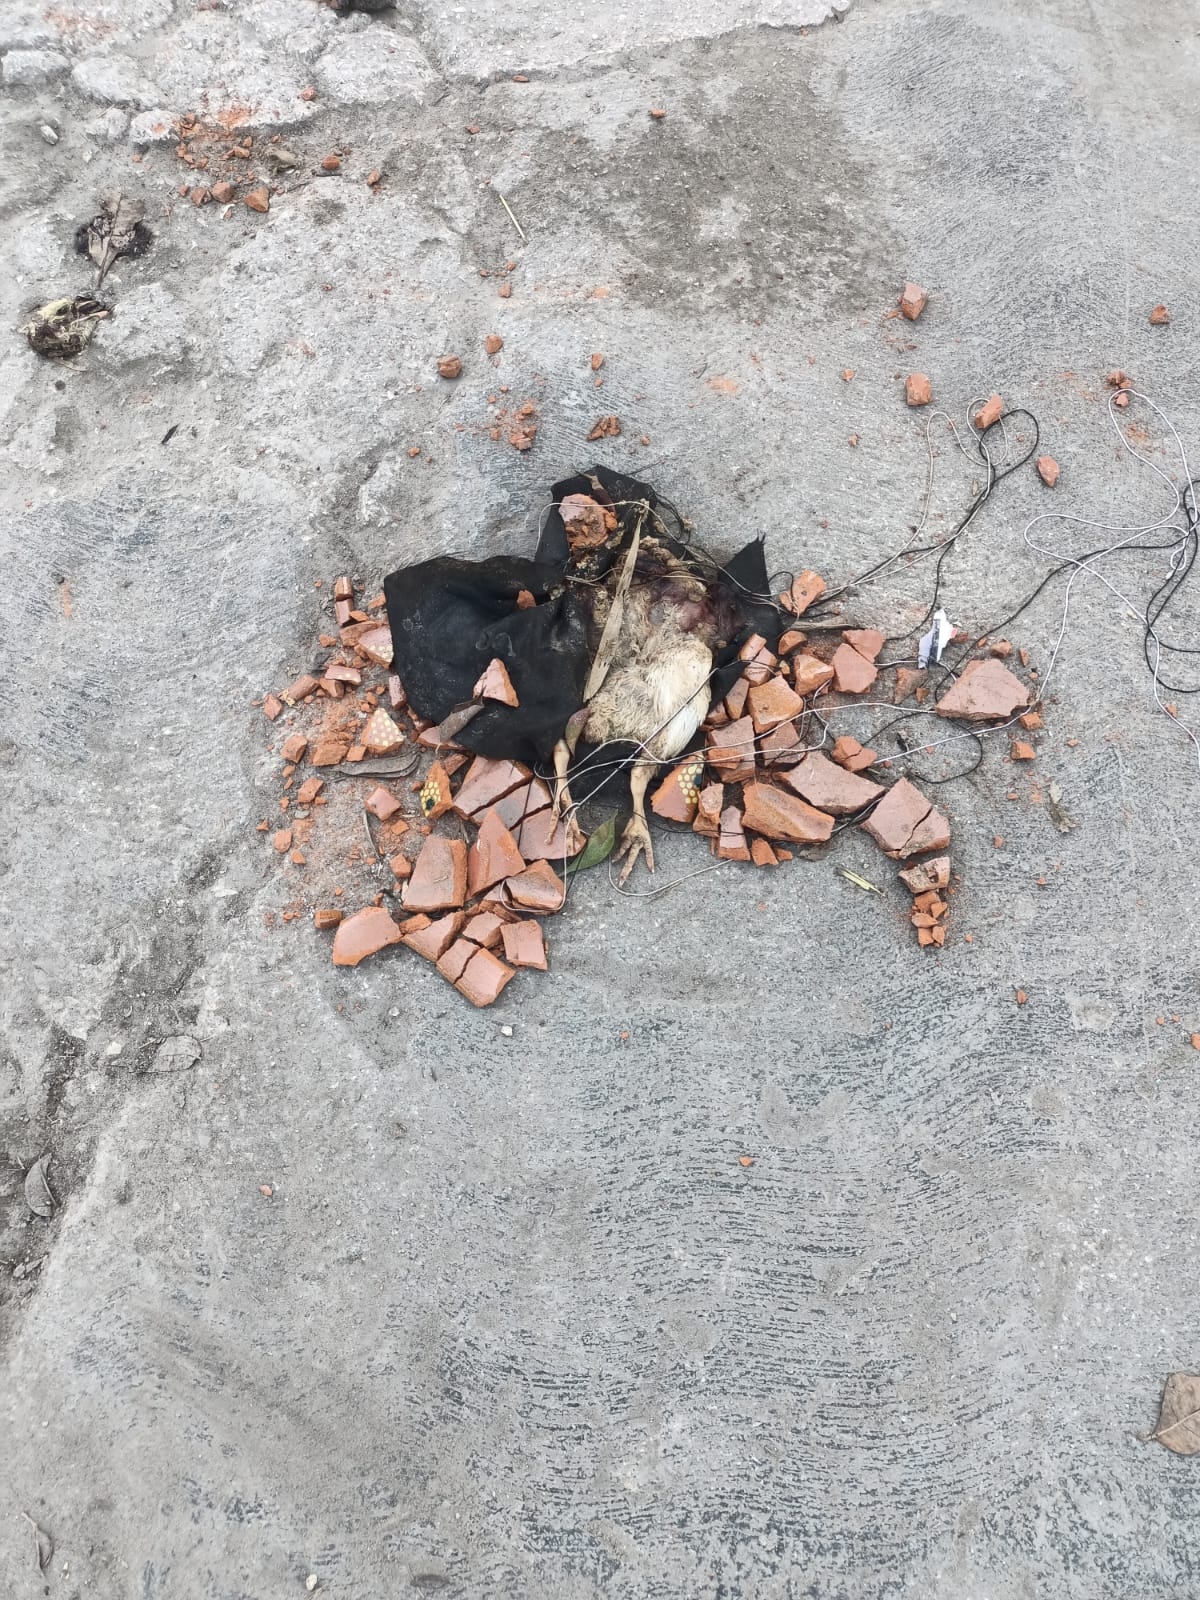 Causa alarma entre vecinos un animal muerto en el panteón de Escárcega, Campeche